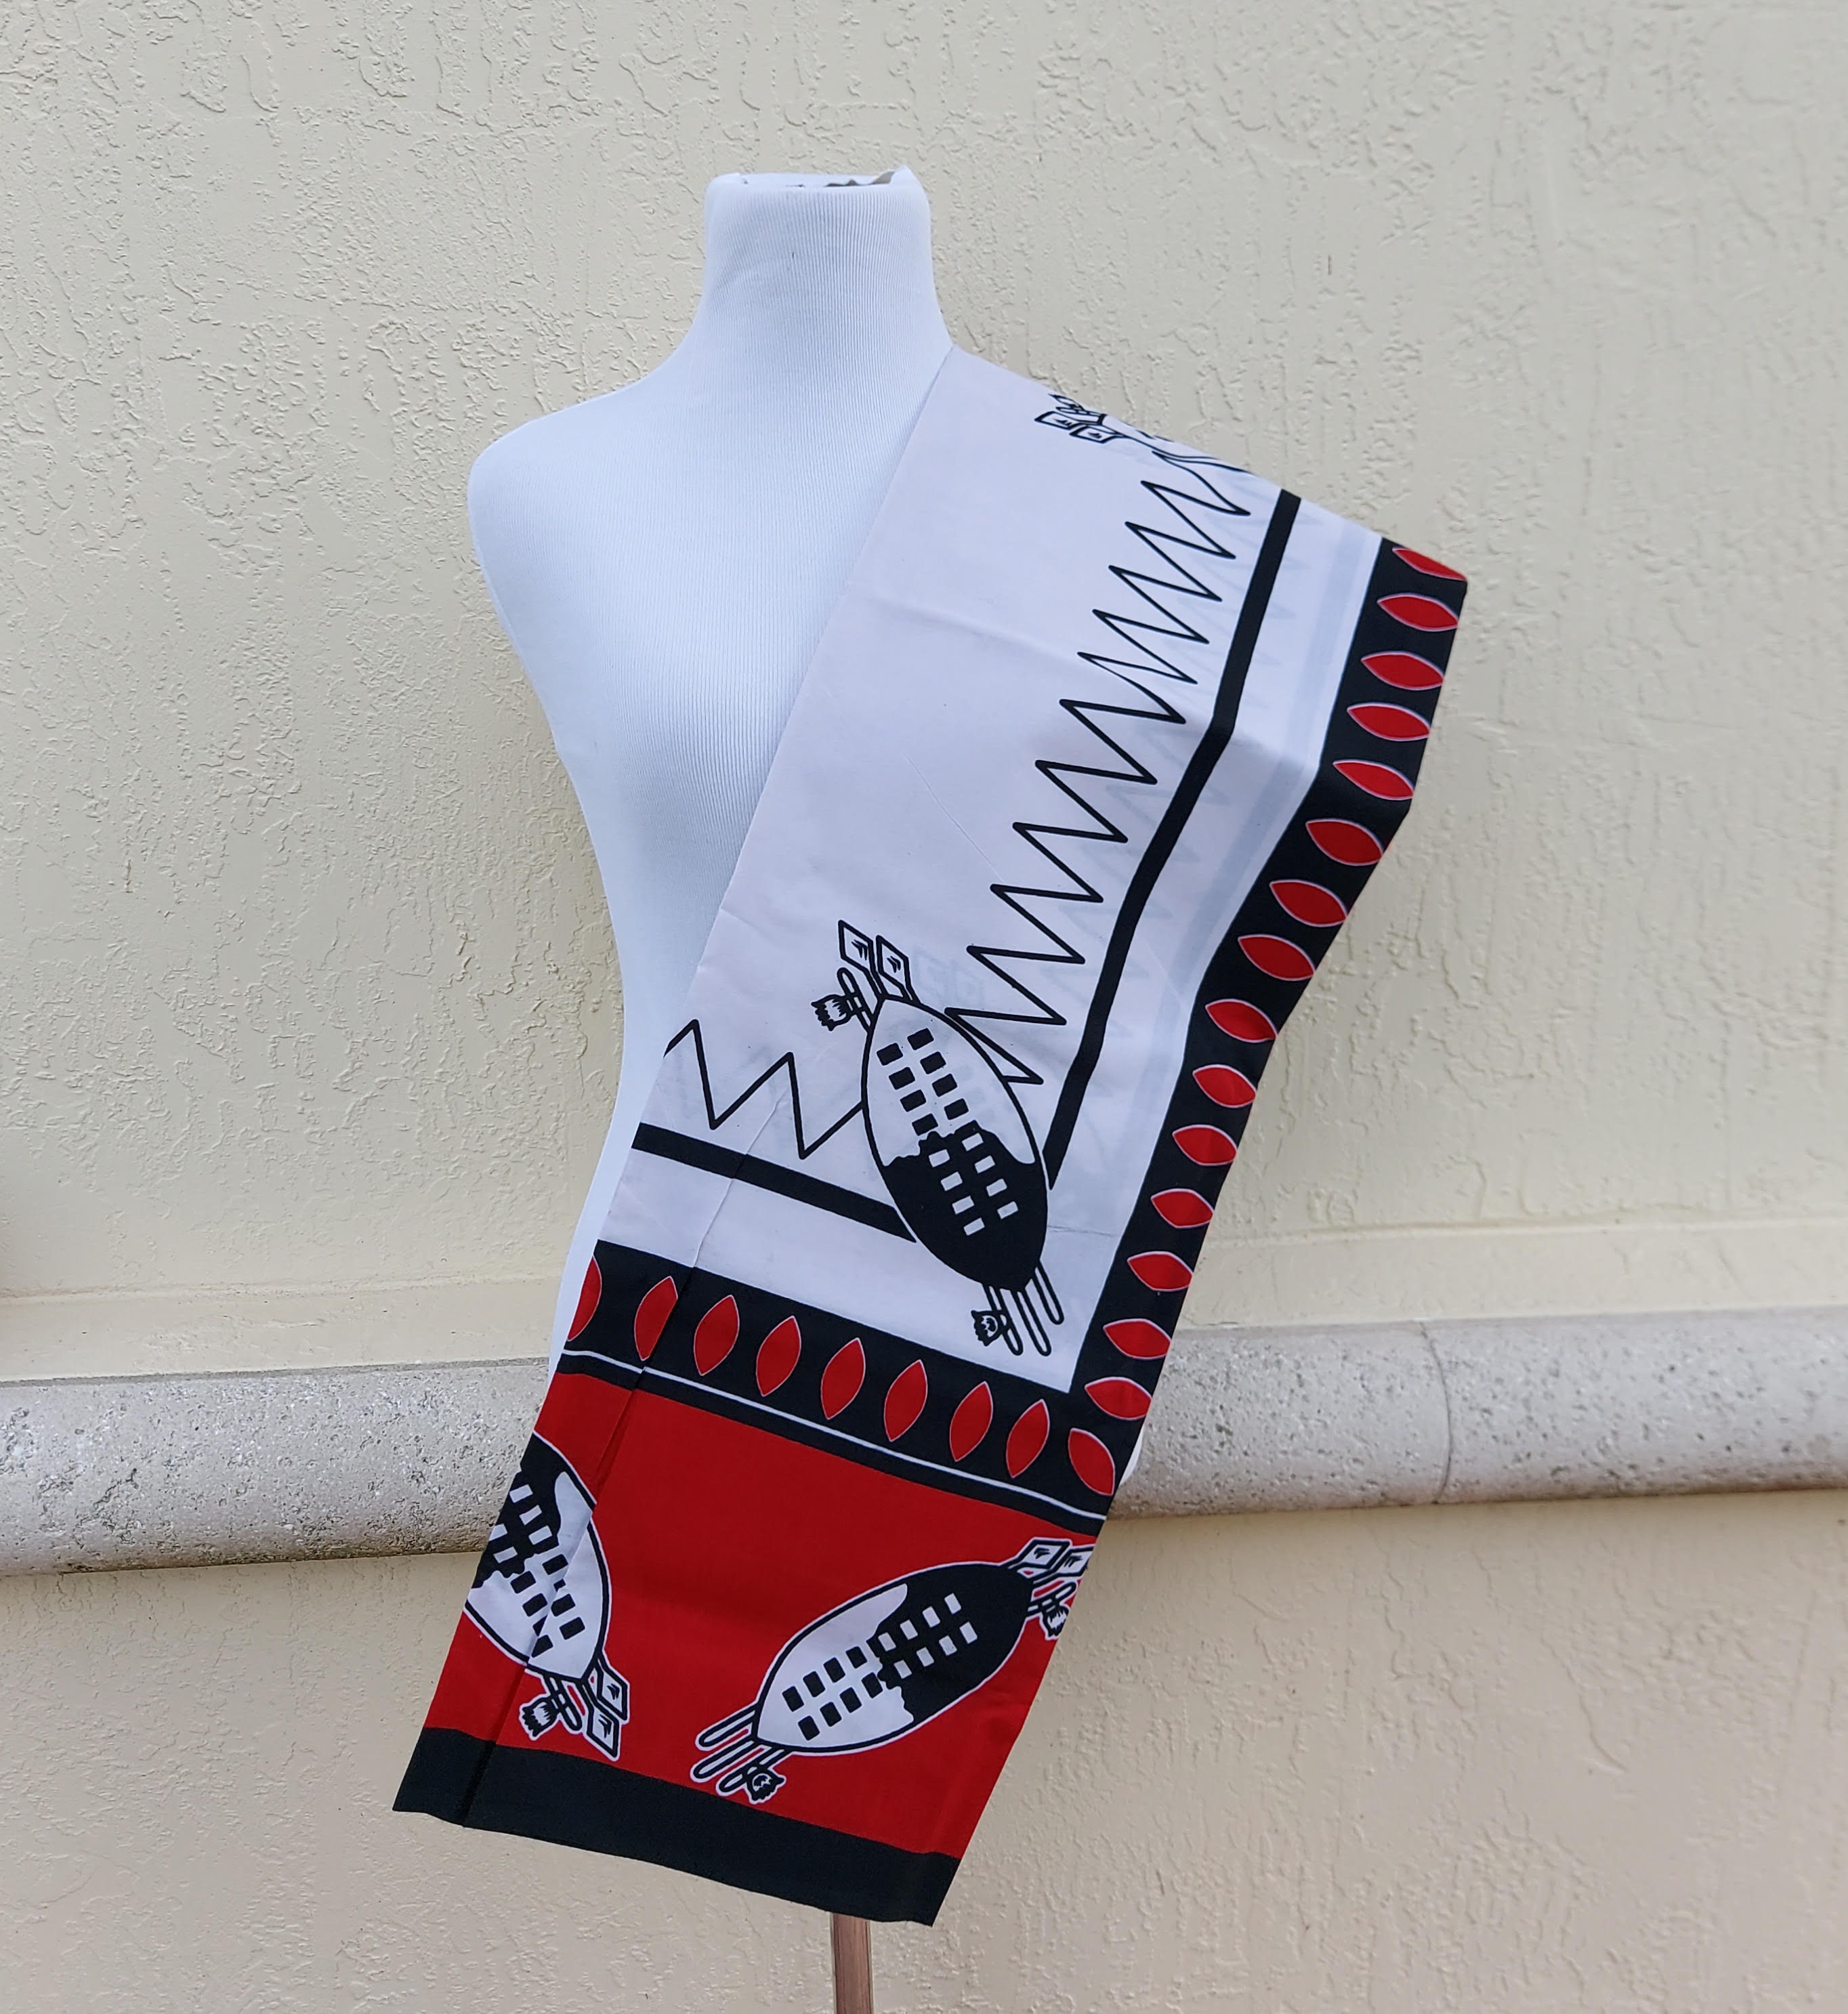 Swazi Red Shields Lihiya/fabric - Etsy